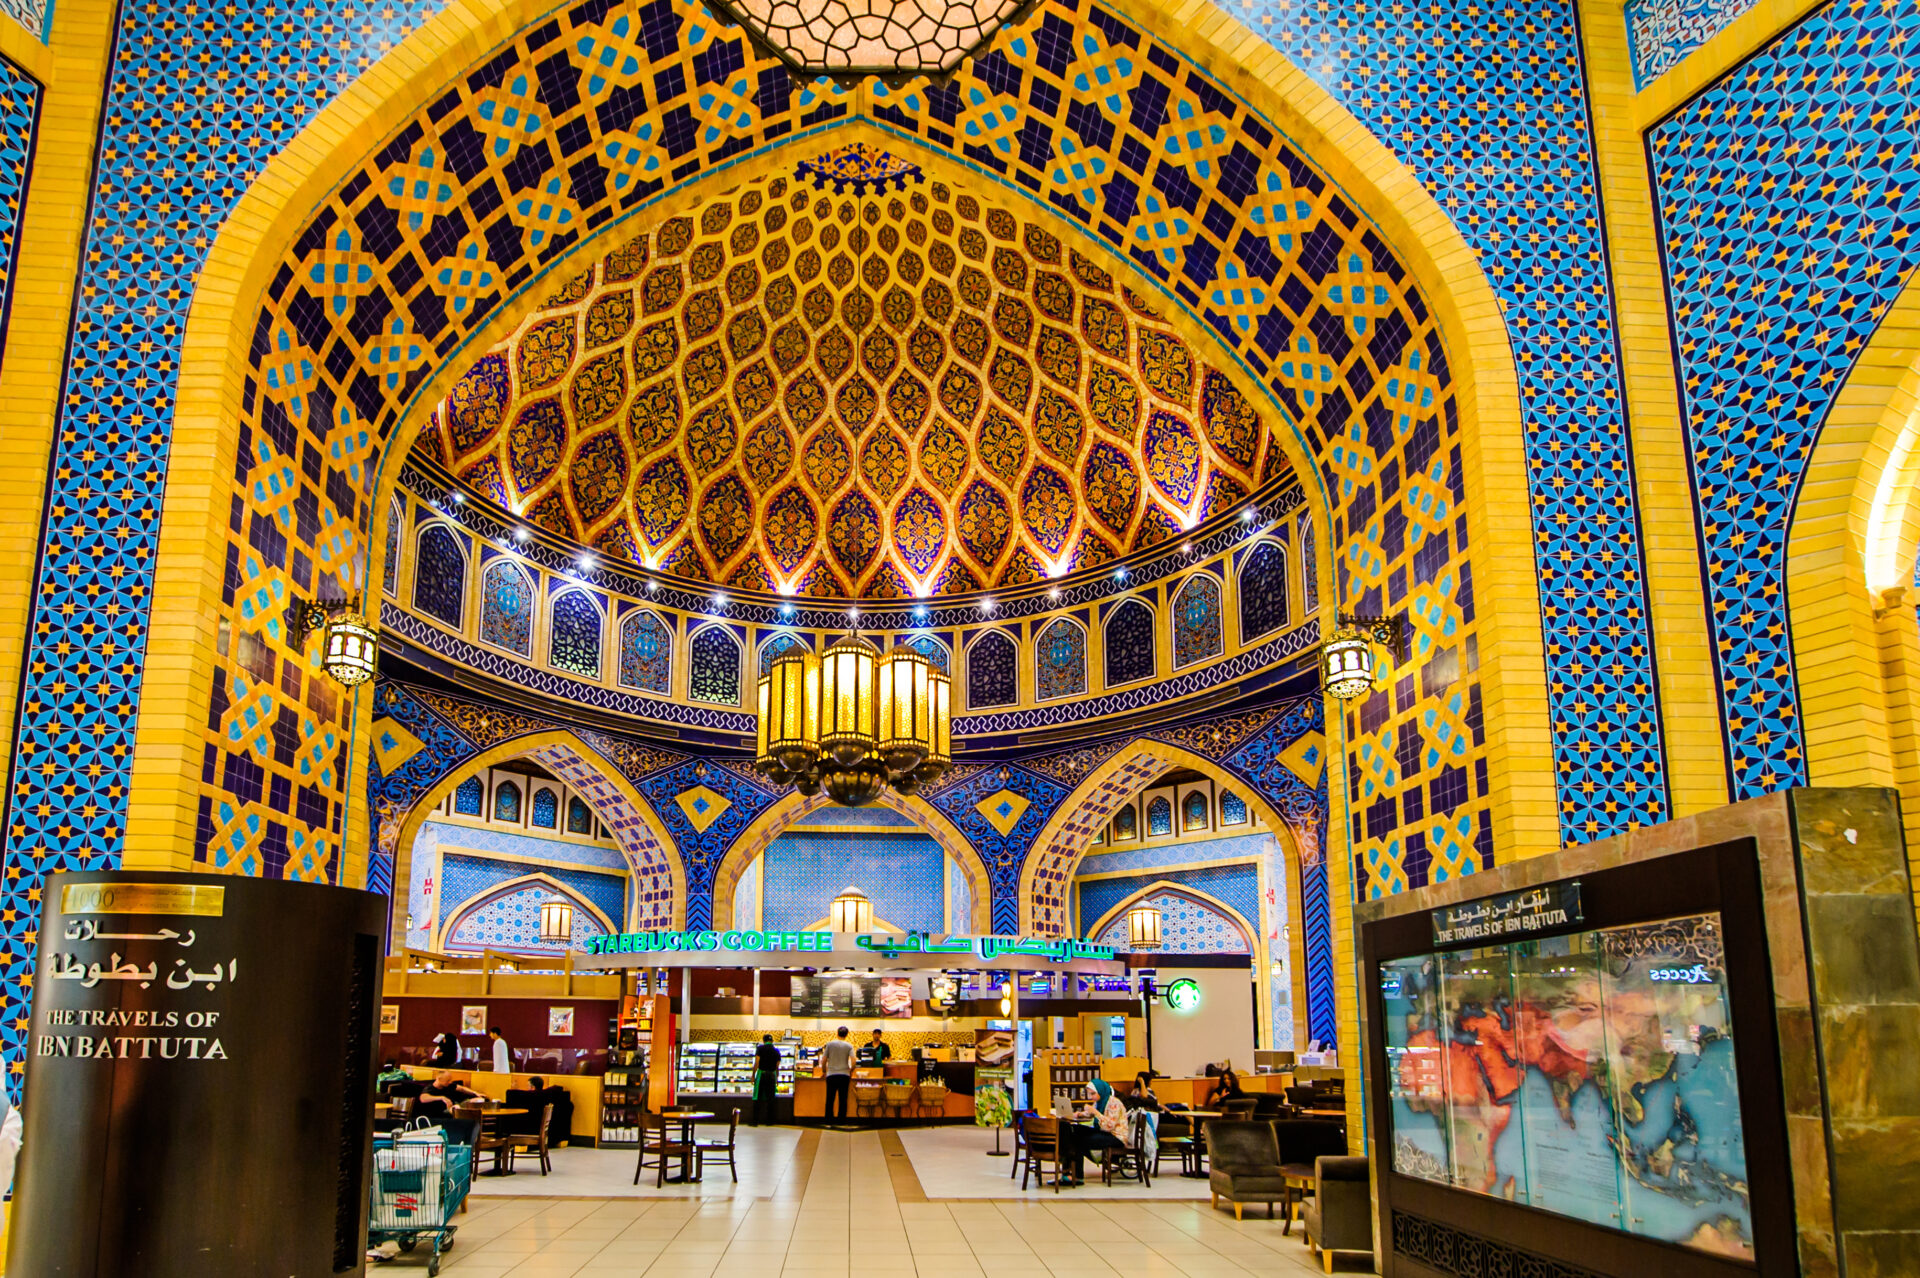 Ibn Battuta Mall in Dubai - Persia Court